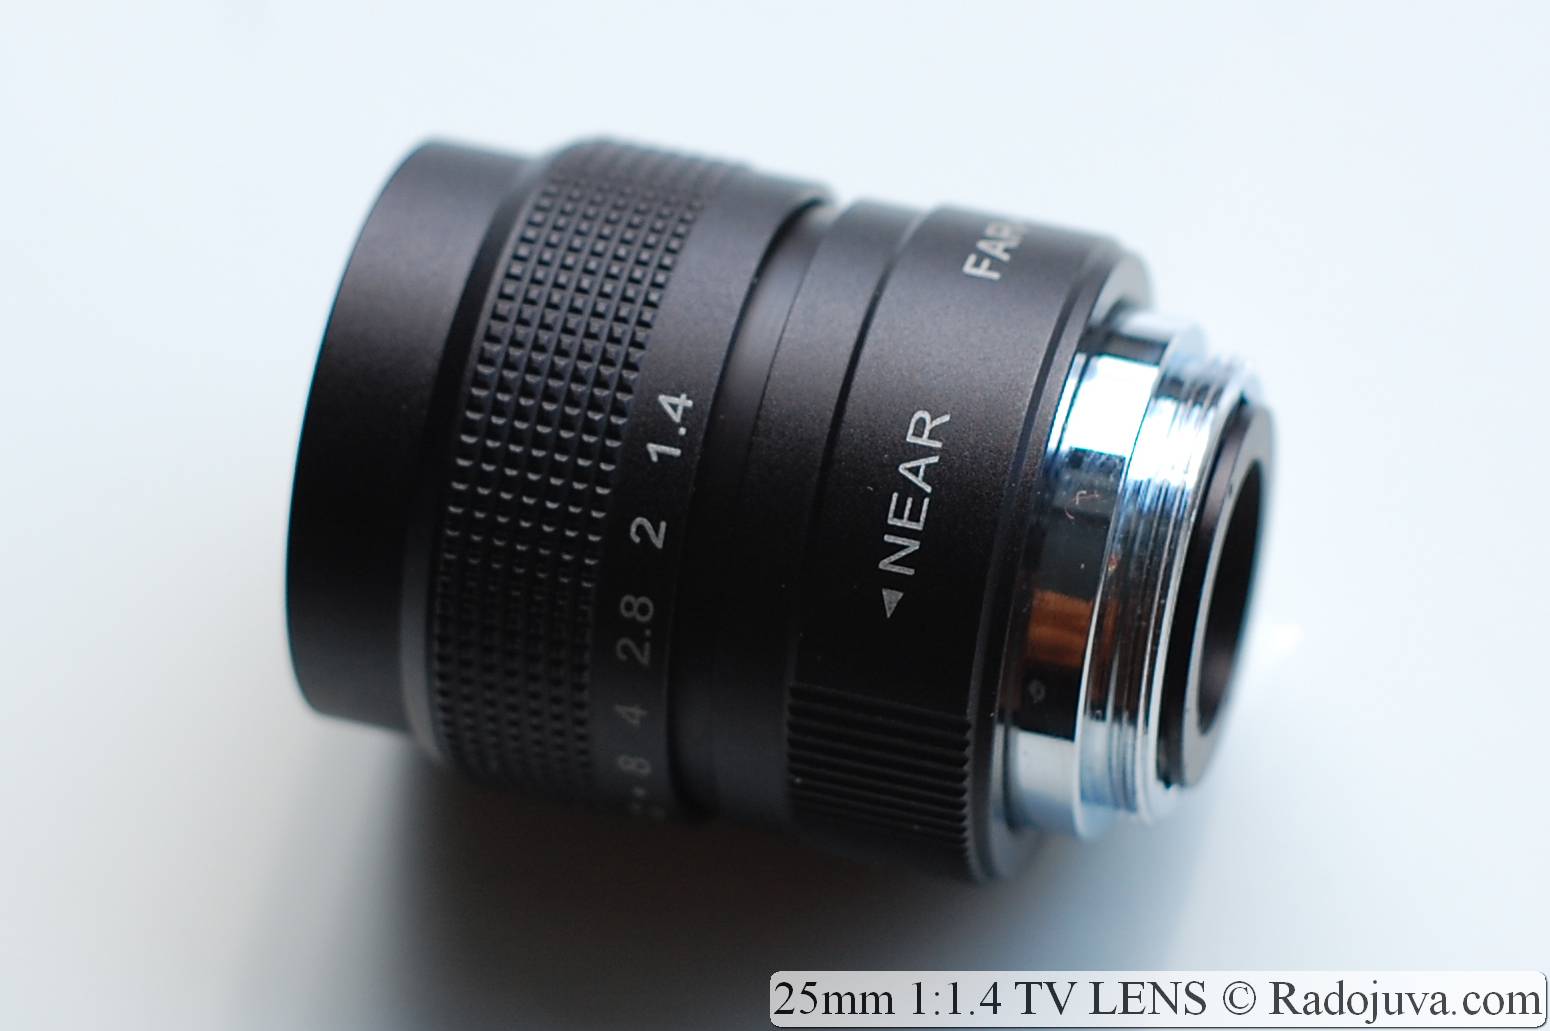 uitdrukking stormloop haag Lens review 25mm 1:1.4 TV LENS (MFT, APS-C, Sony E, Fujian) | Happy